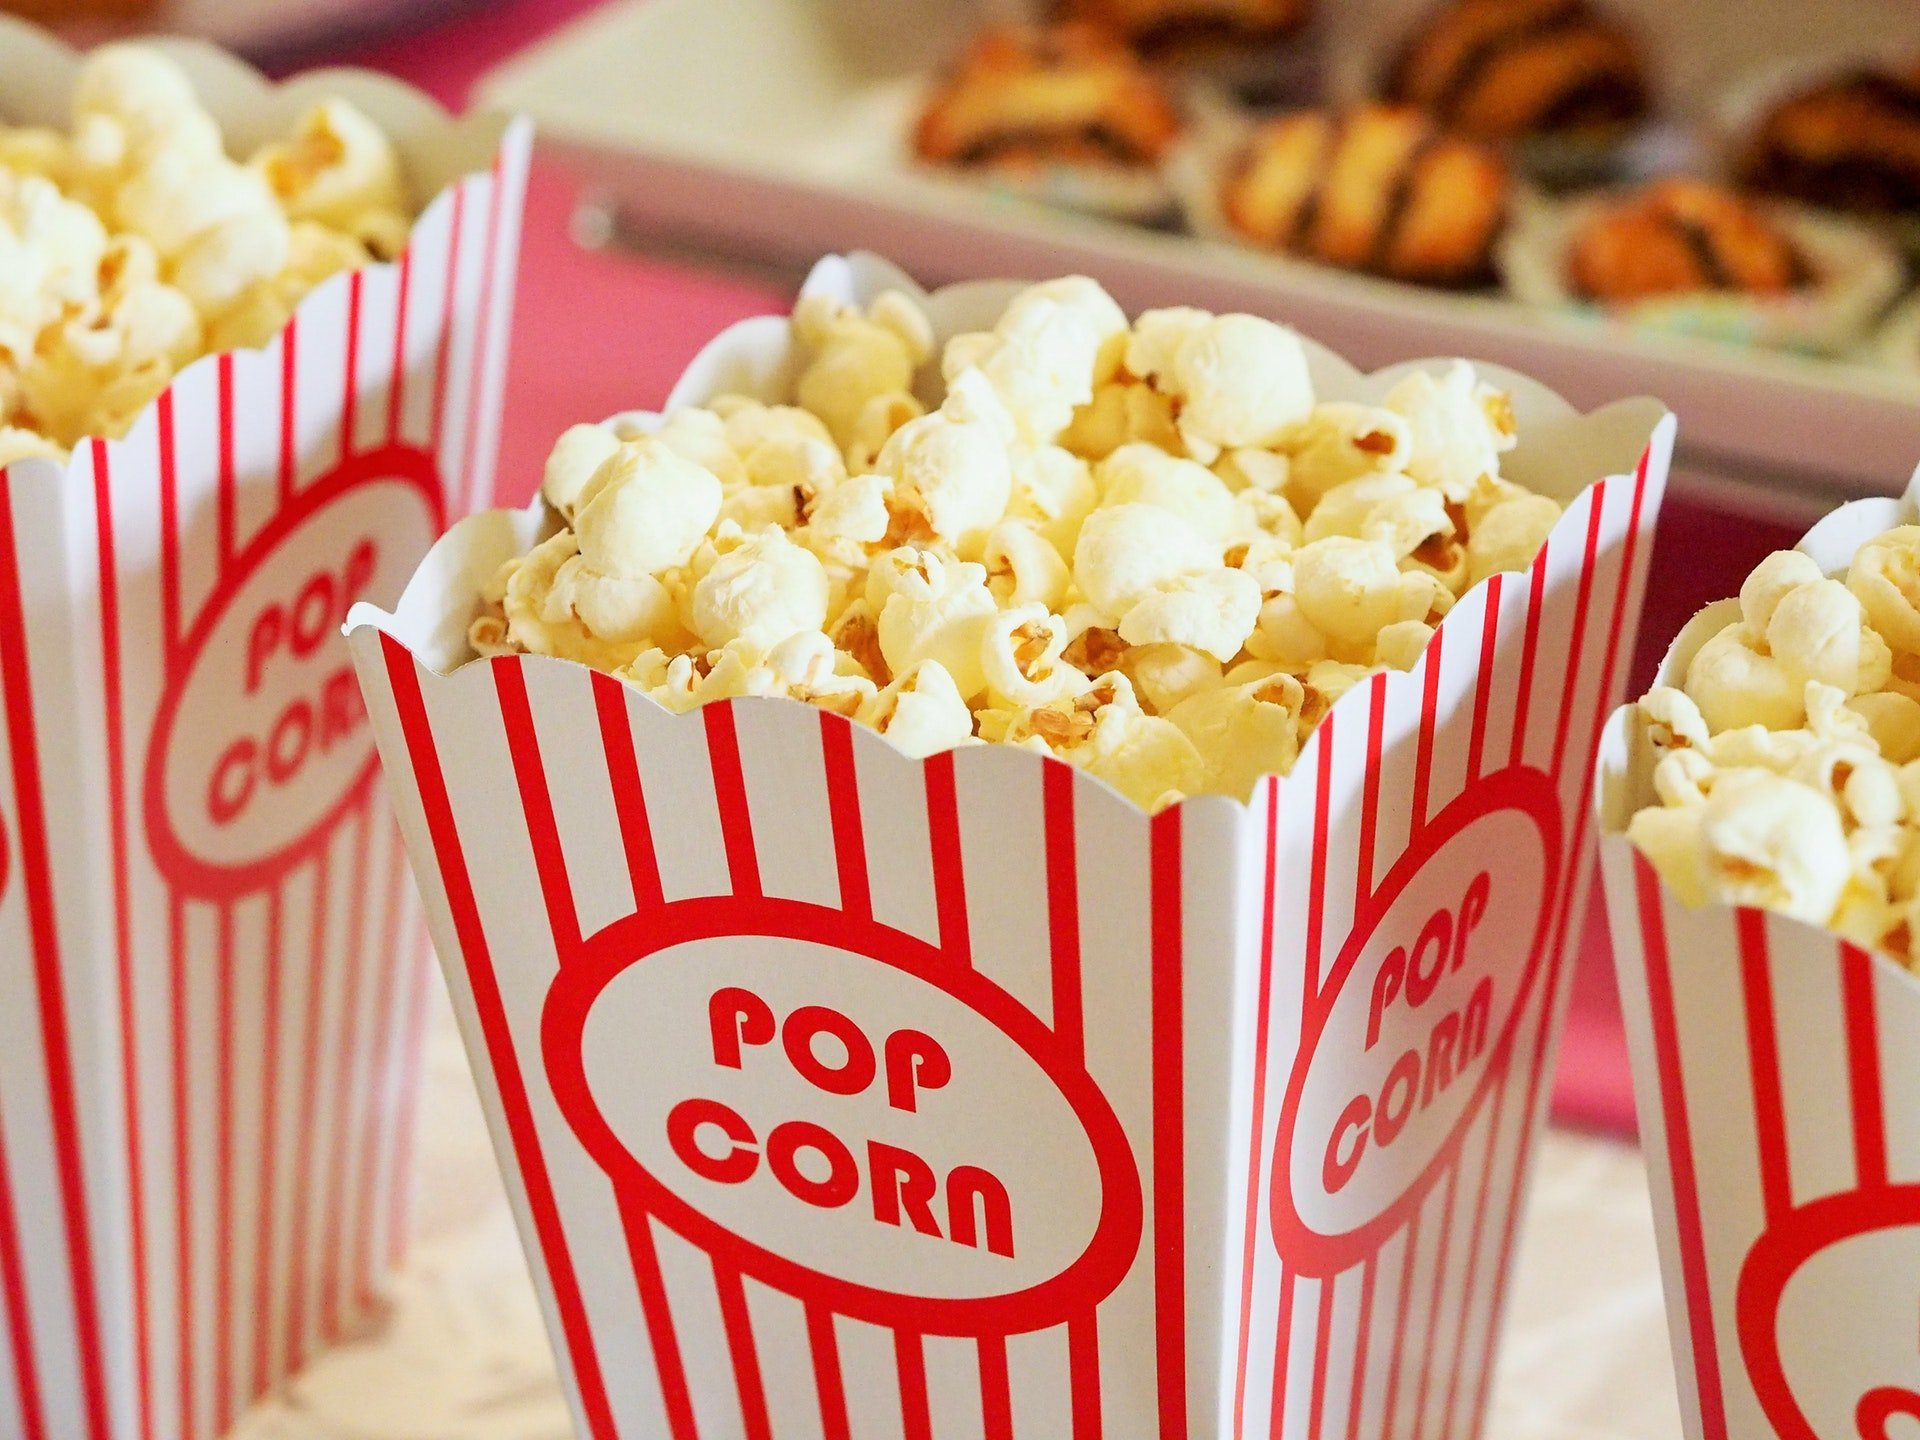 淡水國賓影城 28 號開幕首日 電影票限量優惠 100 元 food snack popcorn movie theater cinema